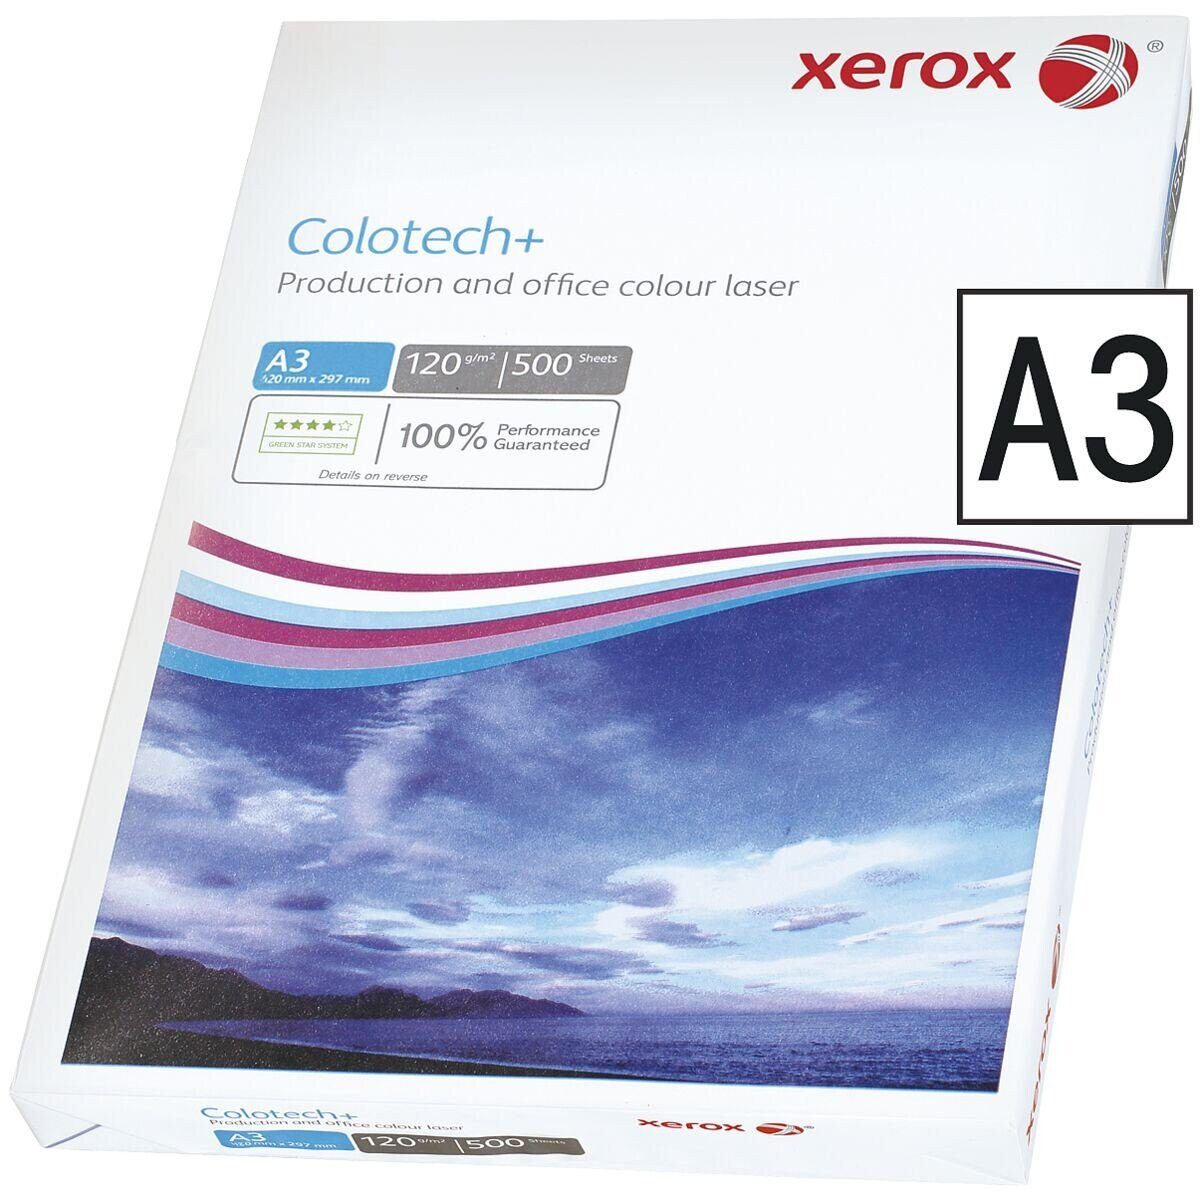 Colotech+, A3, Blatt 120 Farblaser-Druckerpapier Xerox 500 g/m², DIN Format